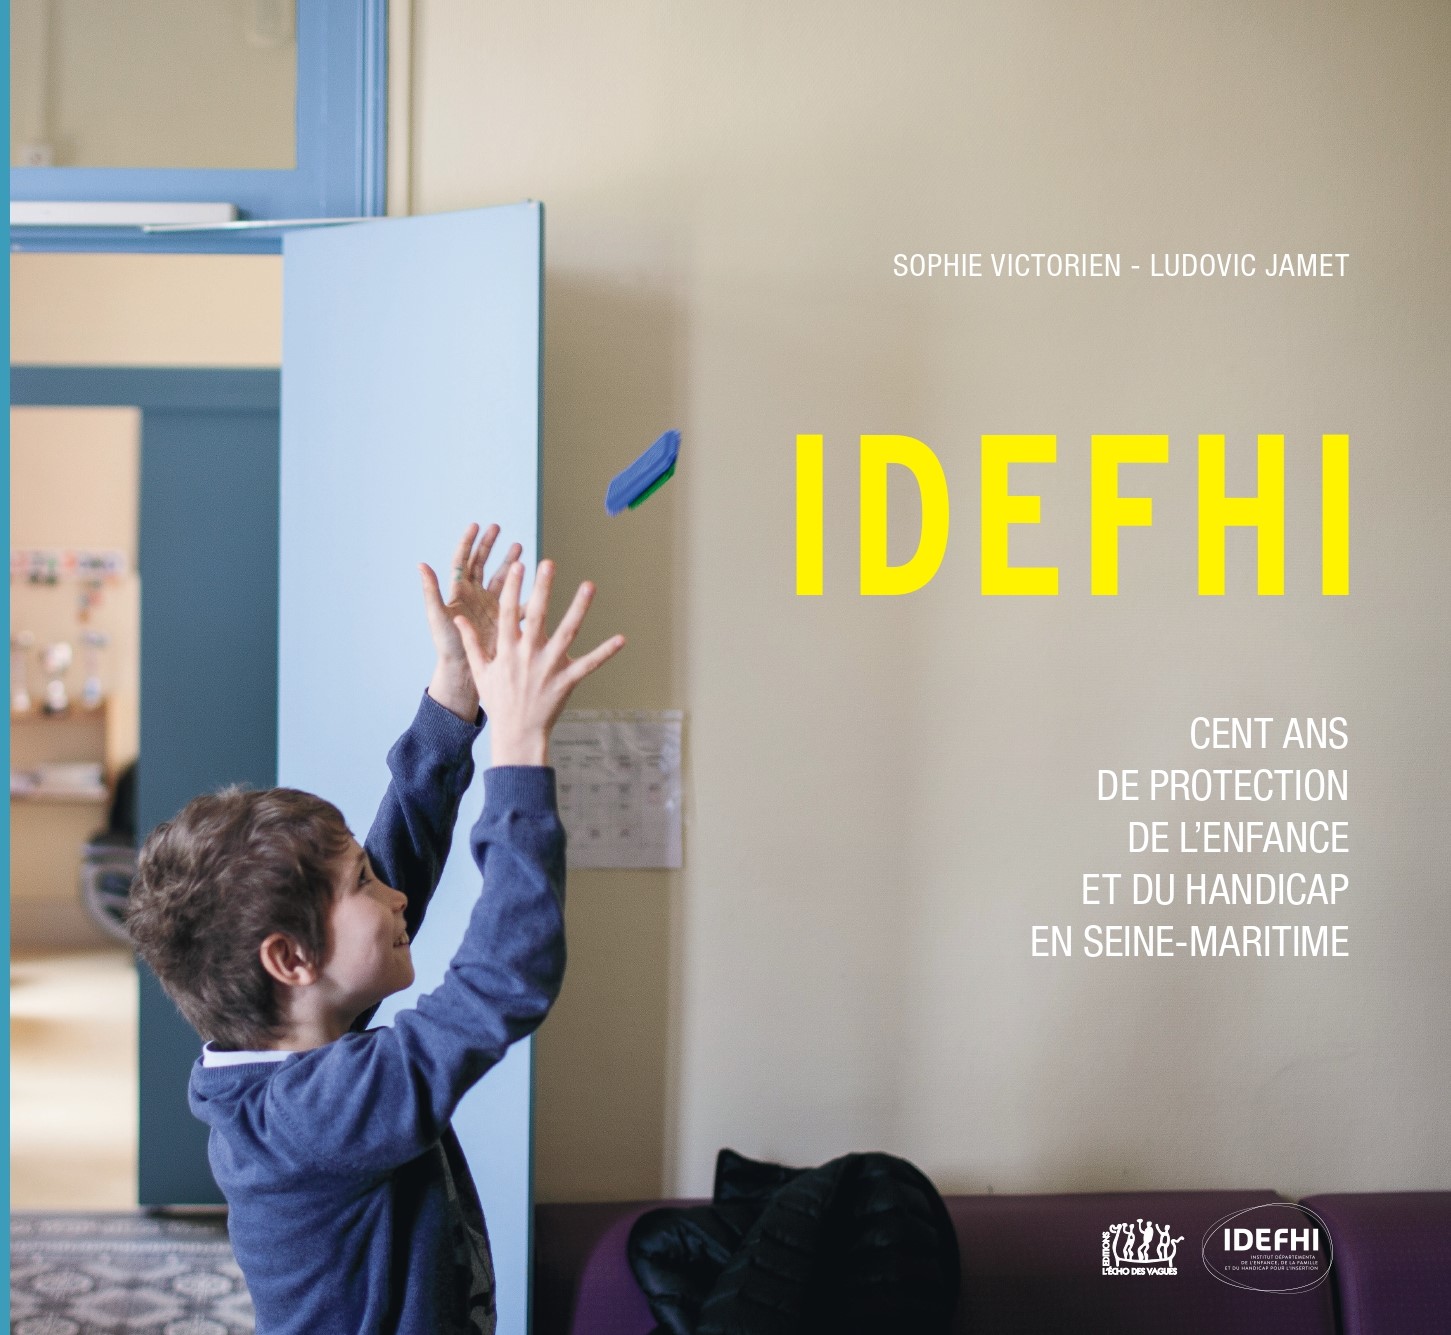 IDEFHI, Cent ans de protection de l’enfance et du handicap en Seine-Maritime (Ludovic Jamet et Sophie Victorien)